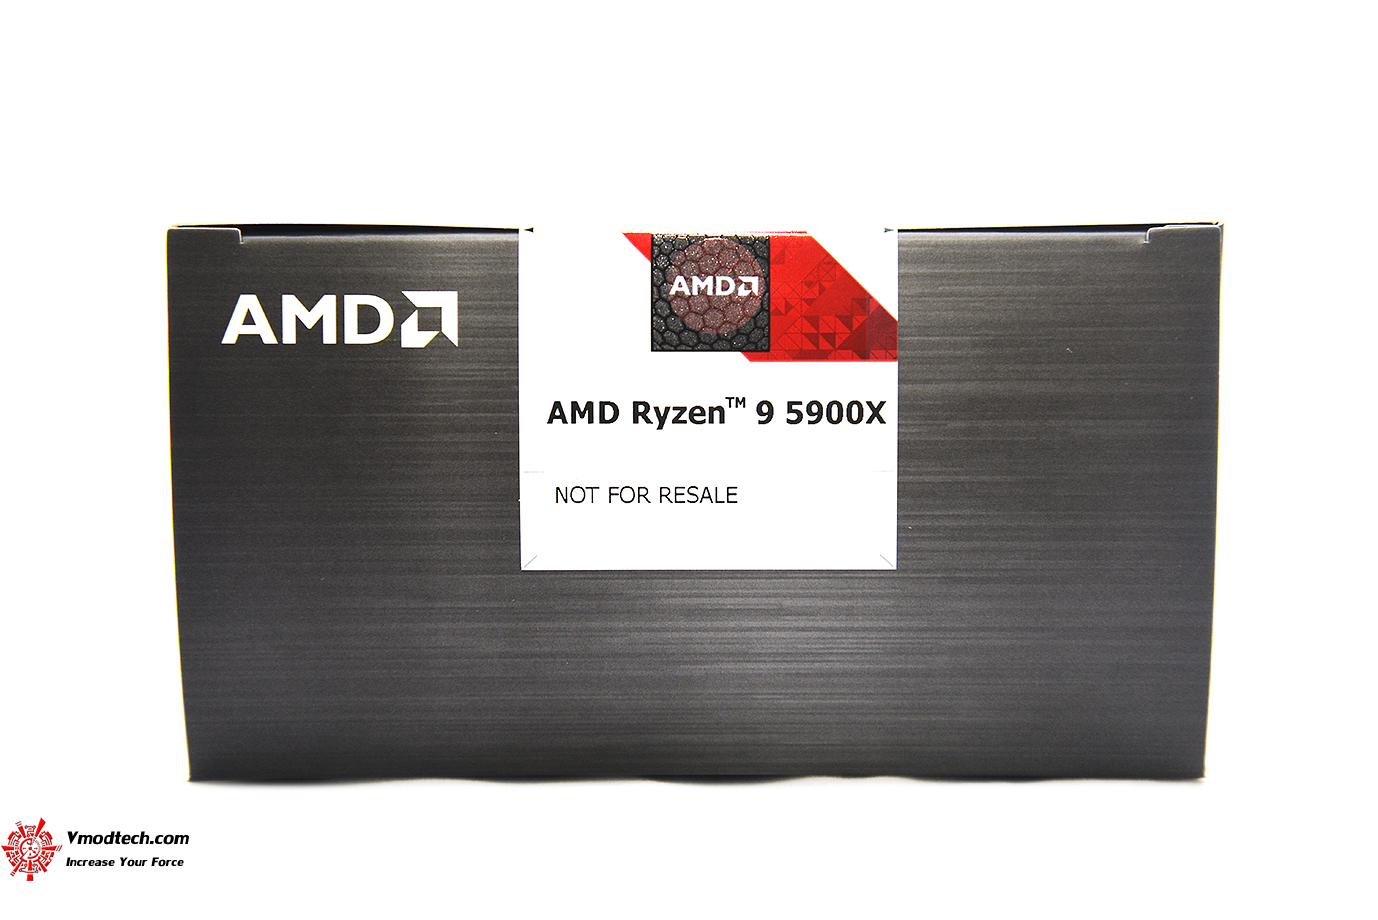 dsc 6541 AMD RYZEN 9 5900X PROCESSOR REVIEW